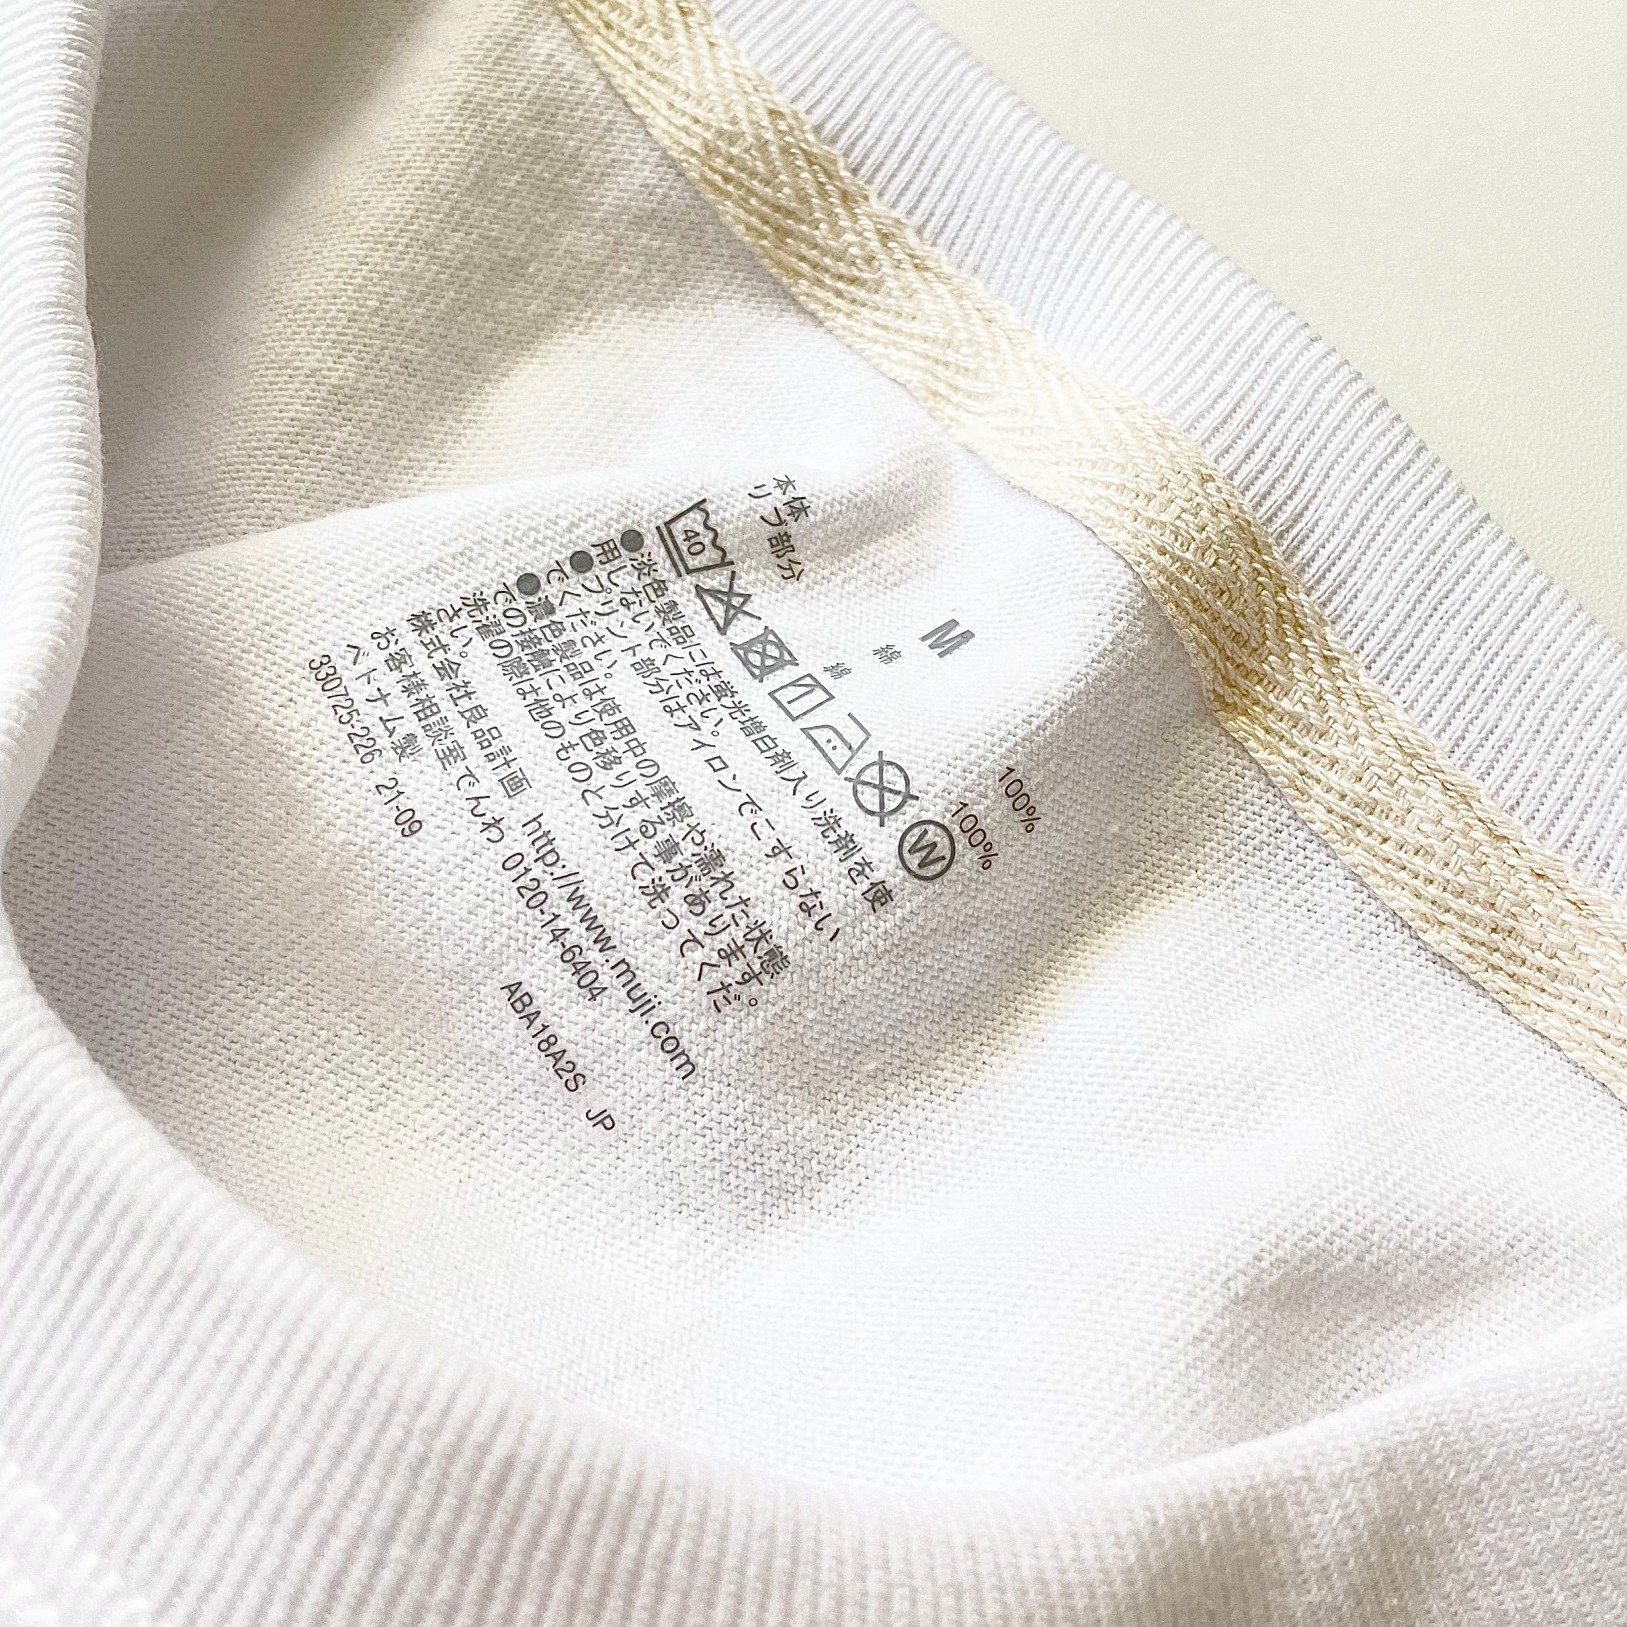 無印良品のおすすめのメンズアイテム「太番手天竺編みTシャツ」